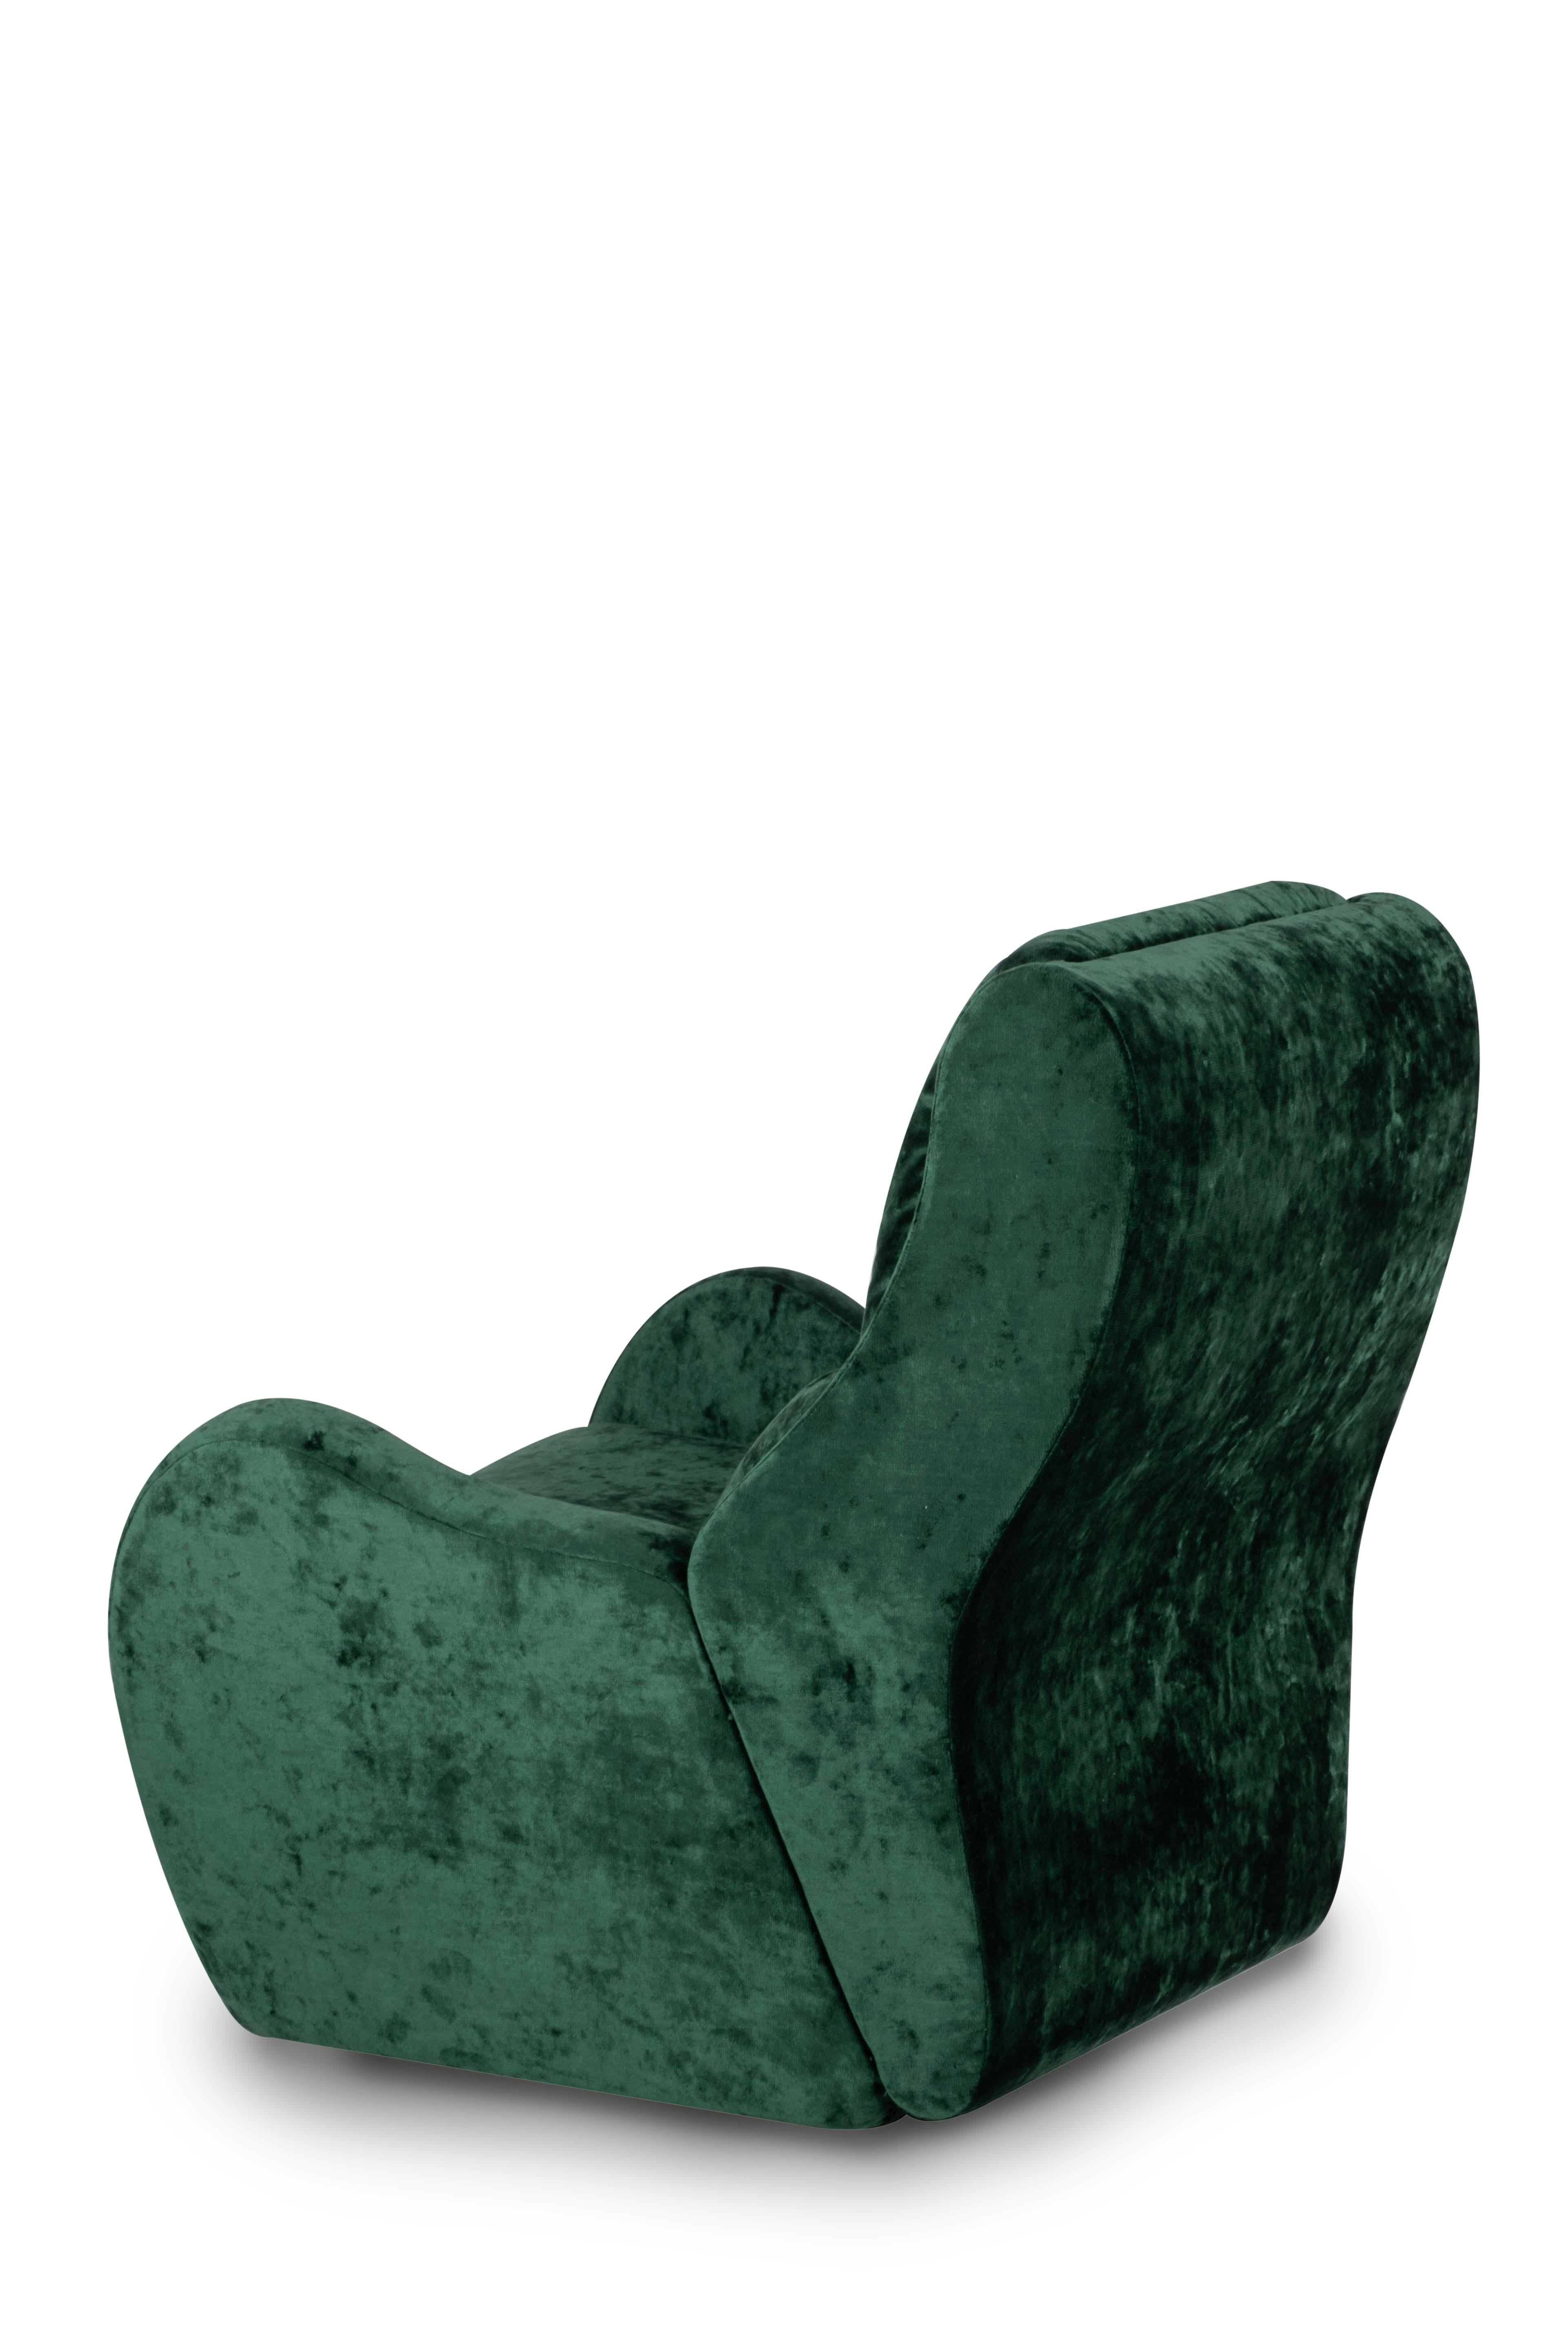 Contemporary Modern Capelinhos Lounge Chair, Swivel, Velvet, Handmade Portugal by Greenapple For Sale